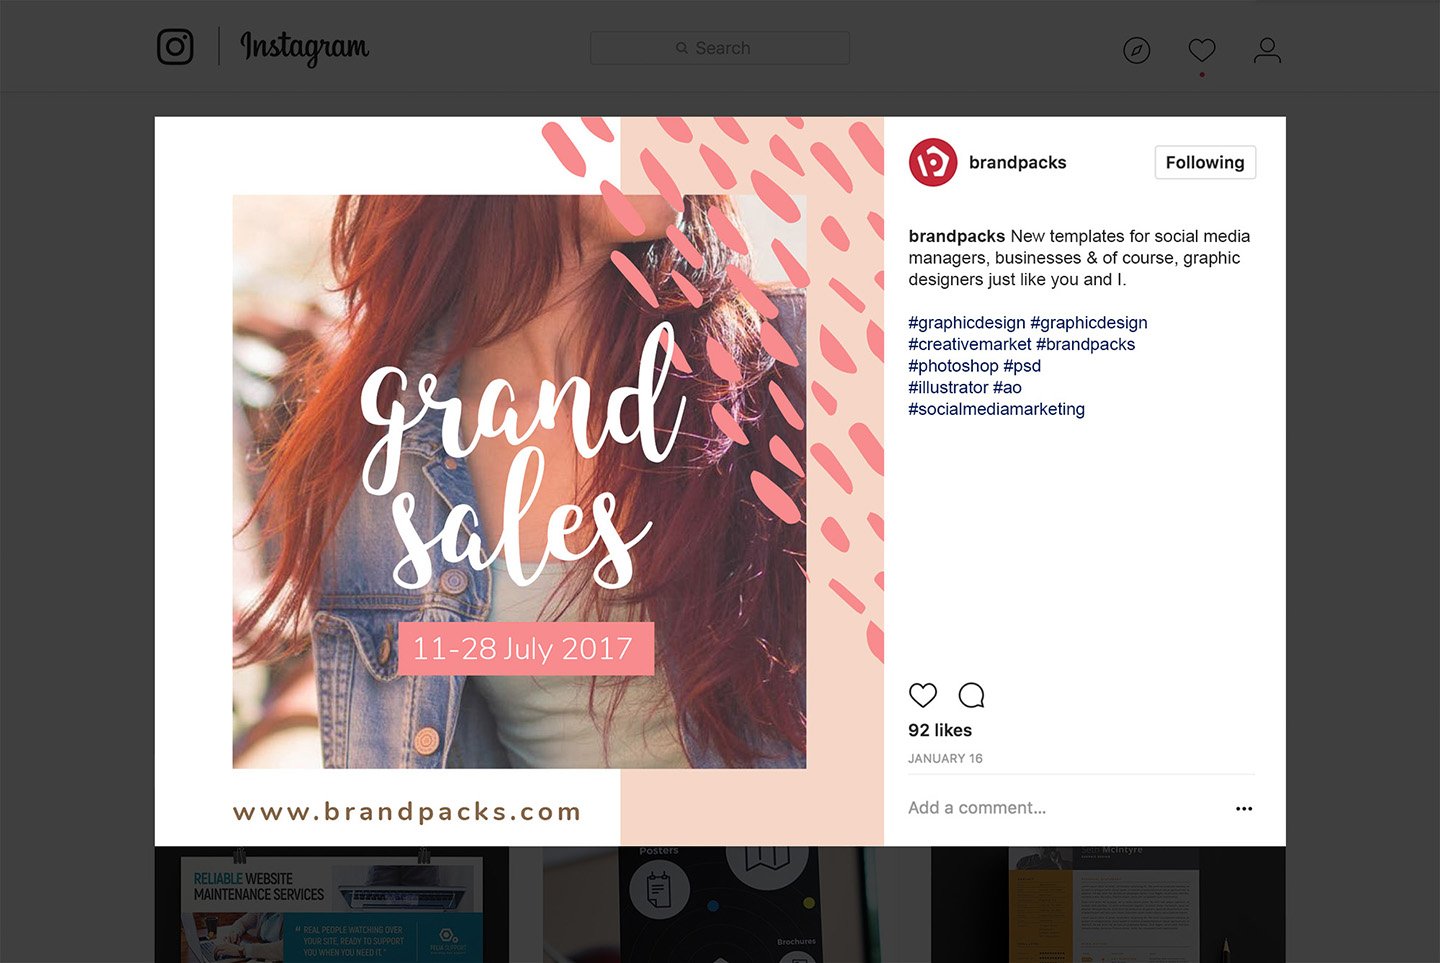 粉色系女性化妆品服装电商营销海报Instagram模板 Social Media Templates Pack Vol.5插图4